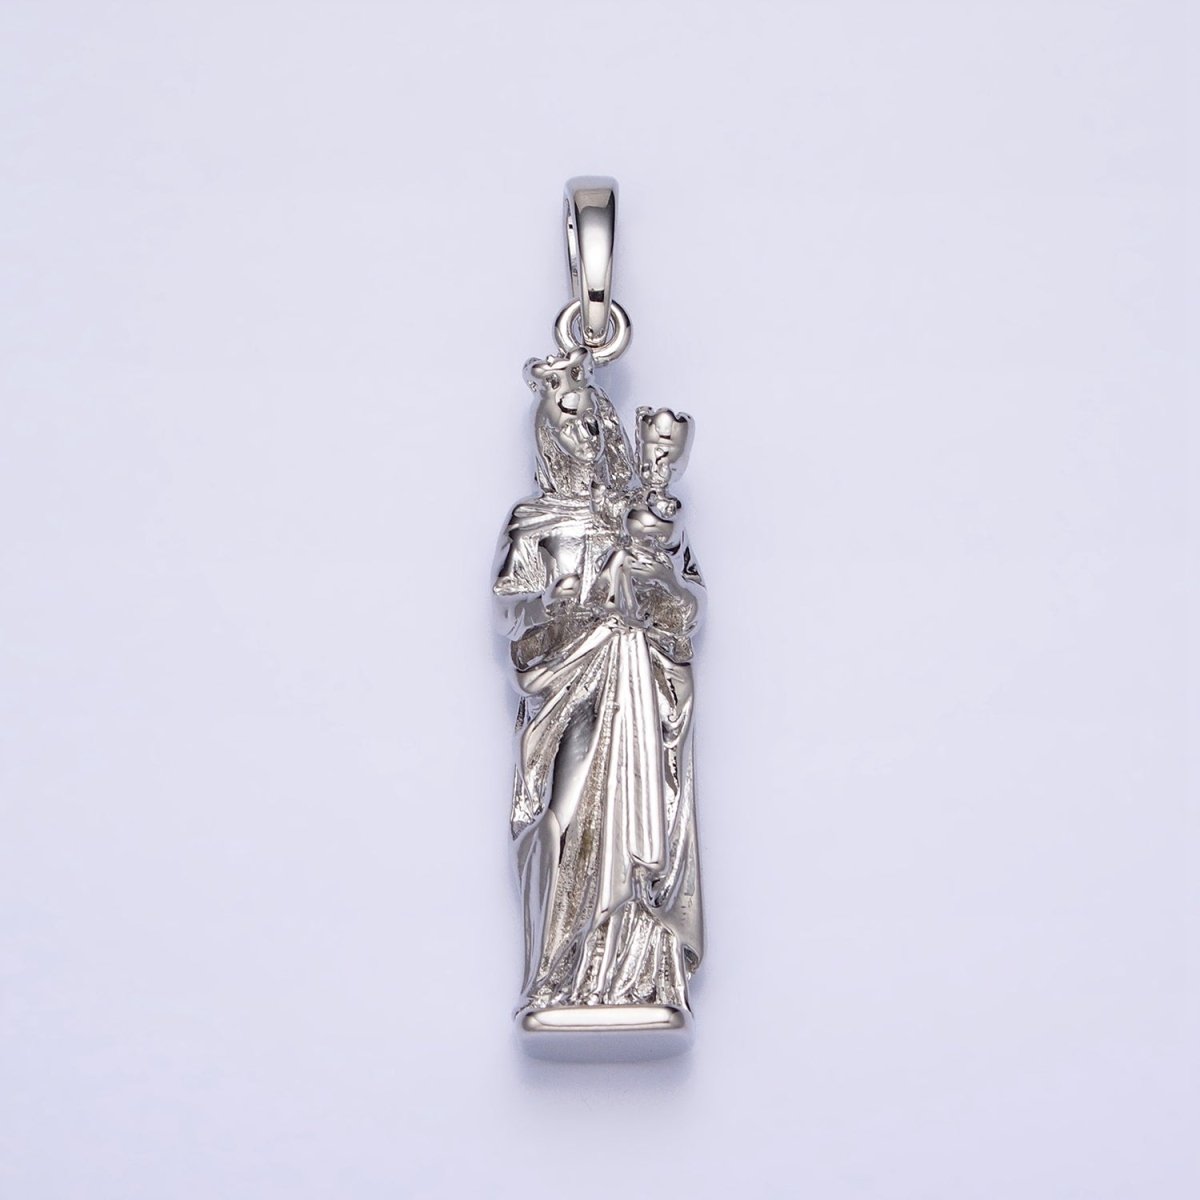 Virgin Mary Charm Necklace, Virgen Del Carmen Pendant, Virgen de la Caridad del Cobre Religious Necklace Pendant in Gold, Silver AA173 AA200 - DLUXCA